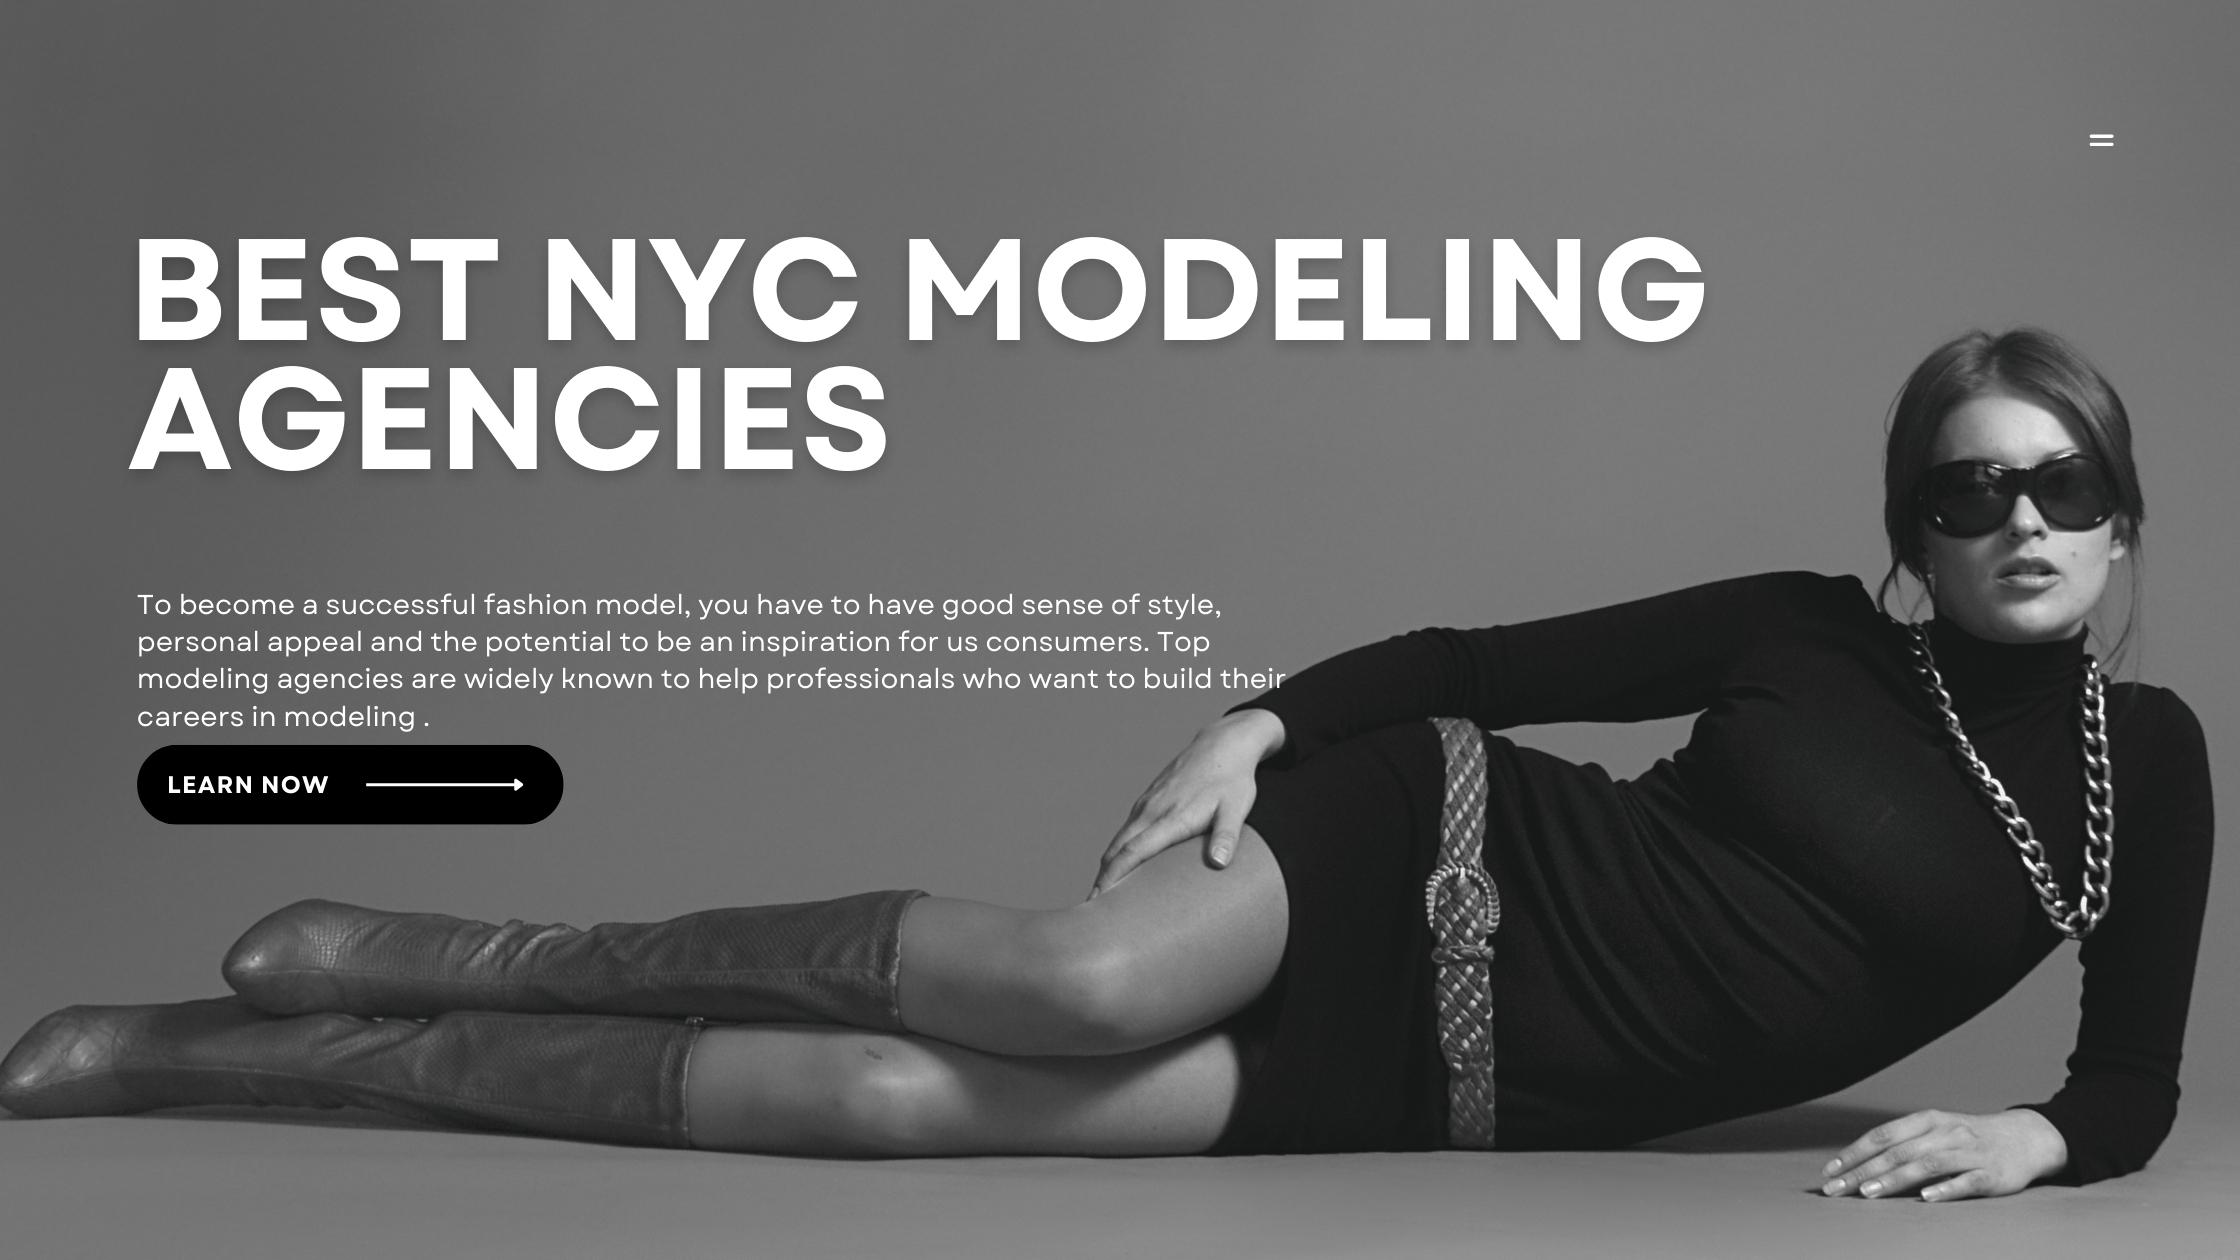 Best NYC Modeling Agencies